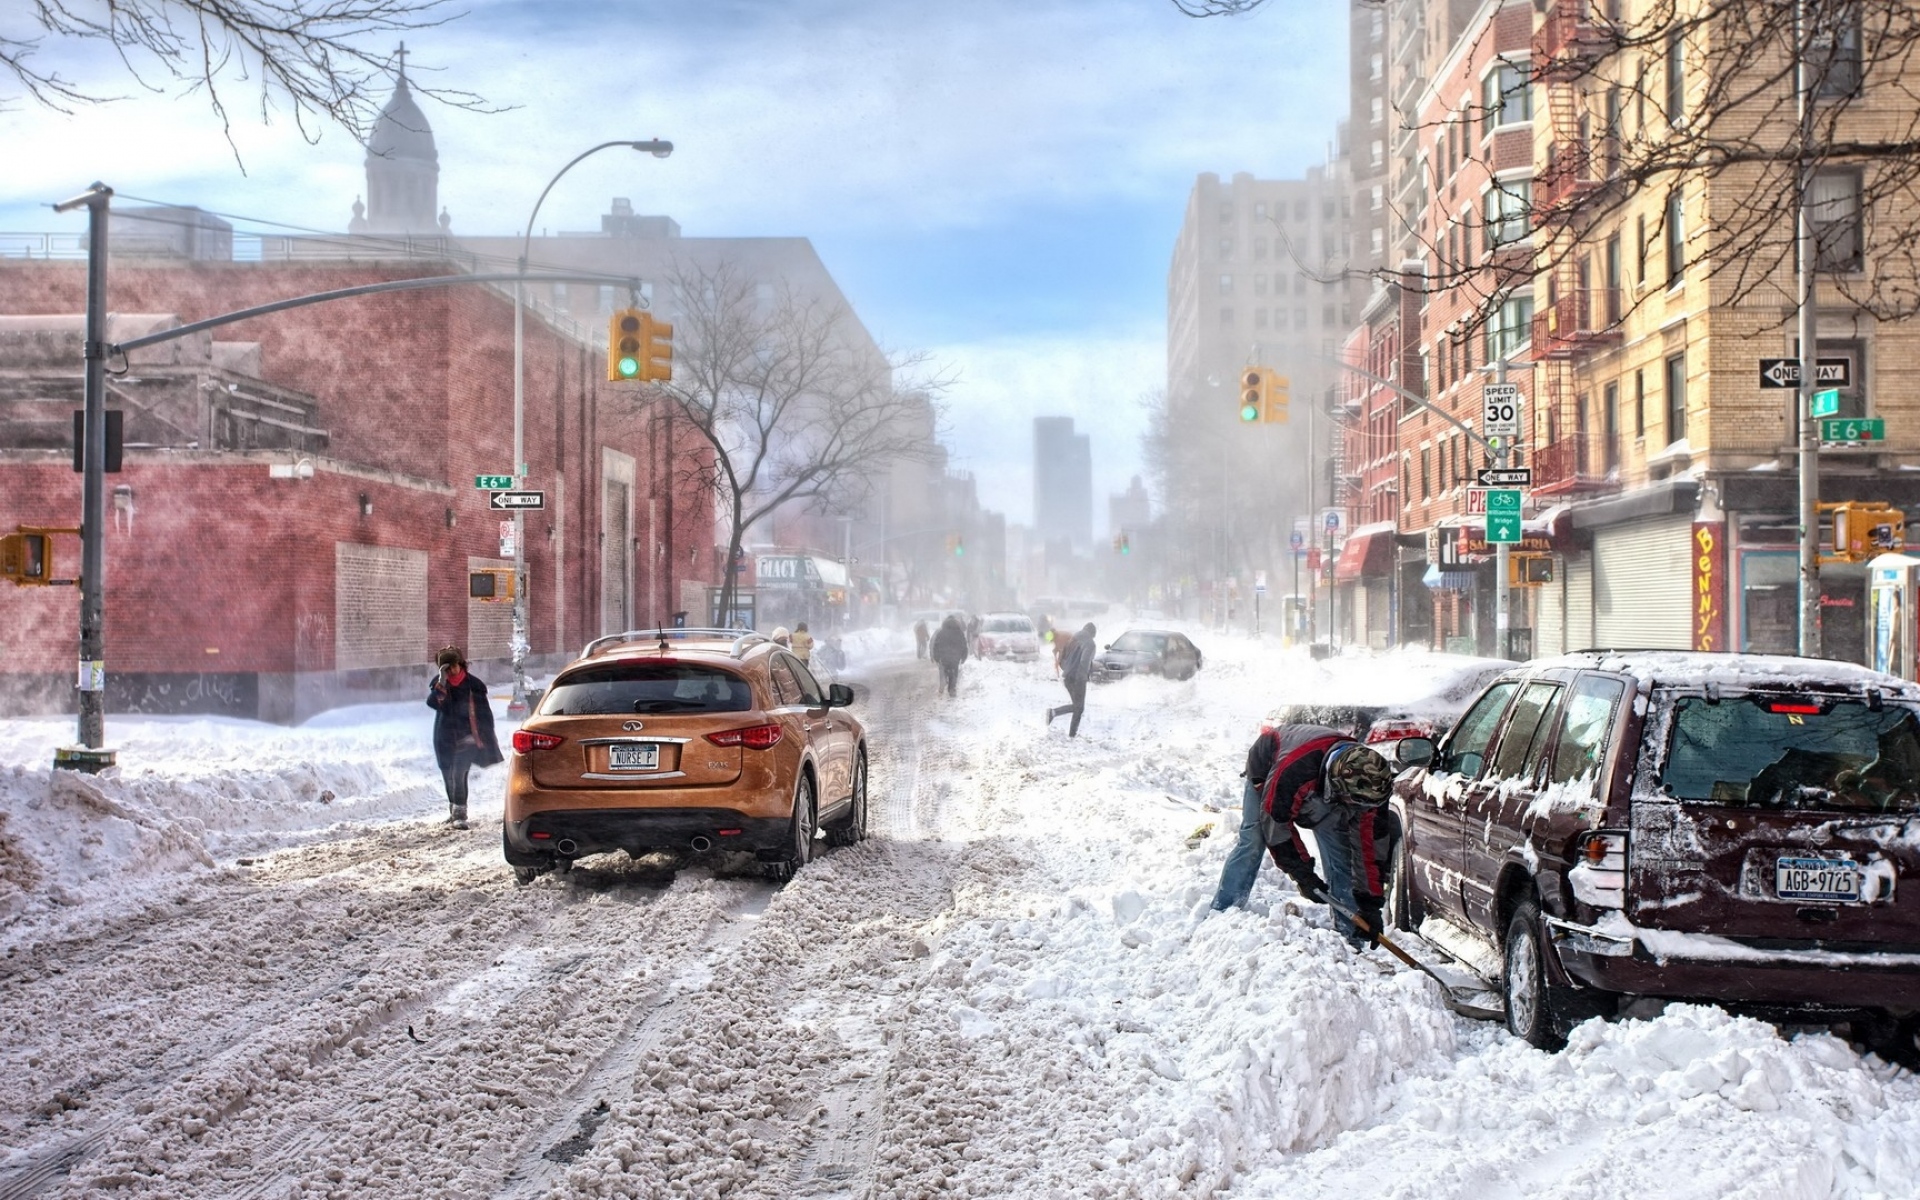 Картинки Нью-Йорк, зима, снег, автомобили, улица фото и обои на рабочий стол